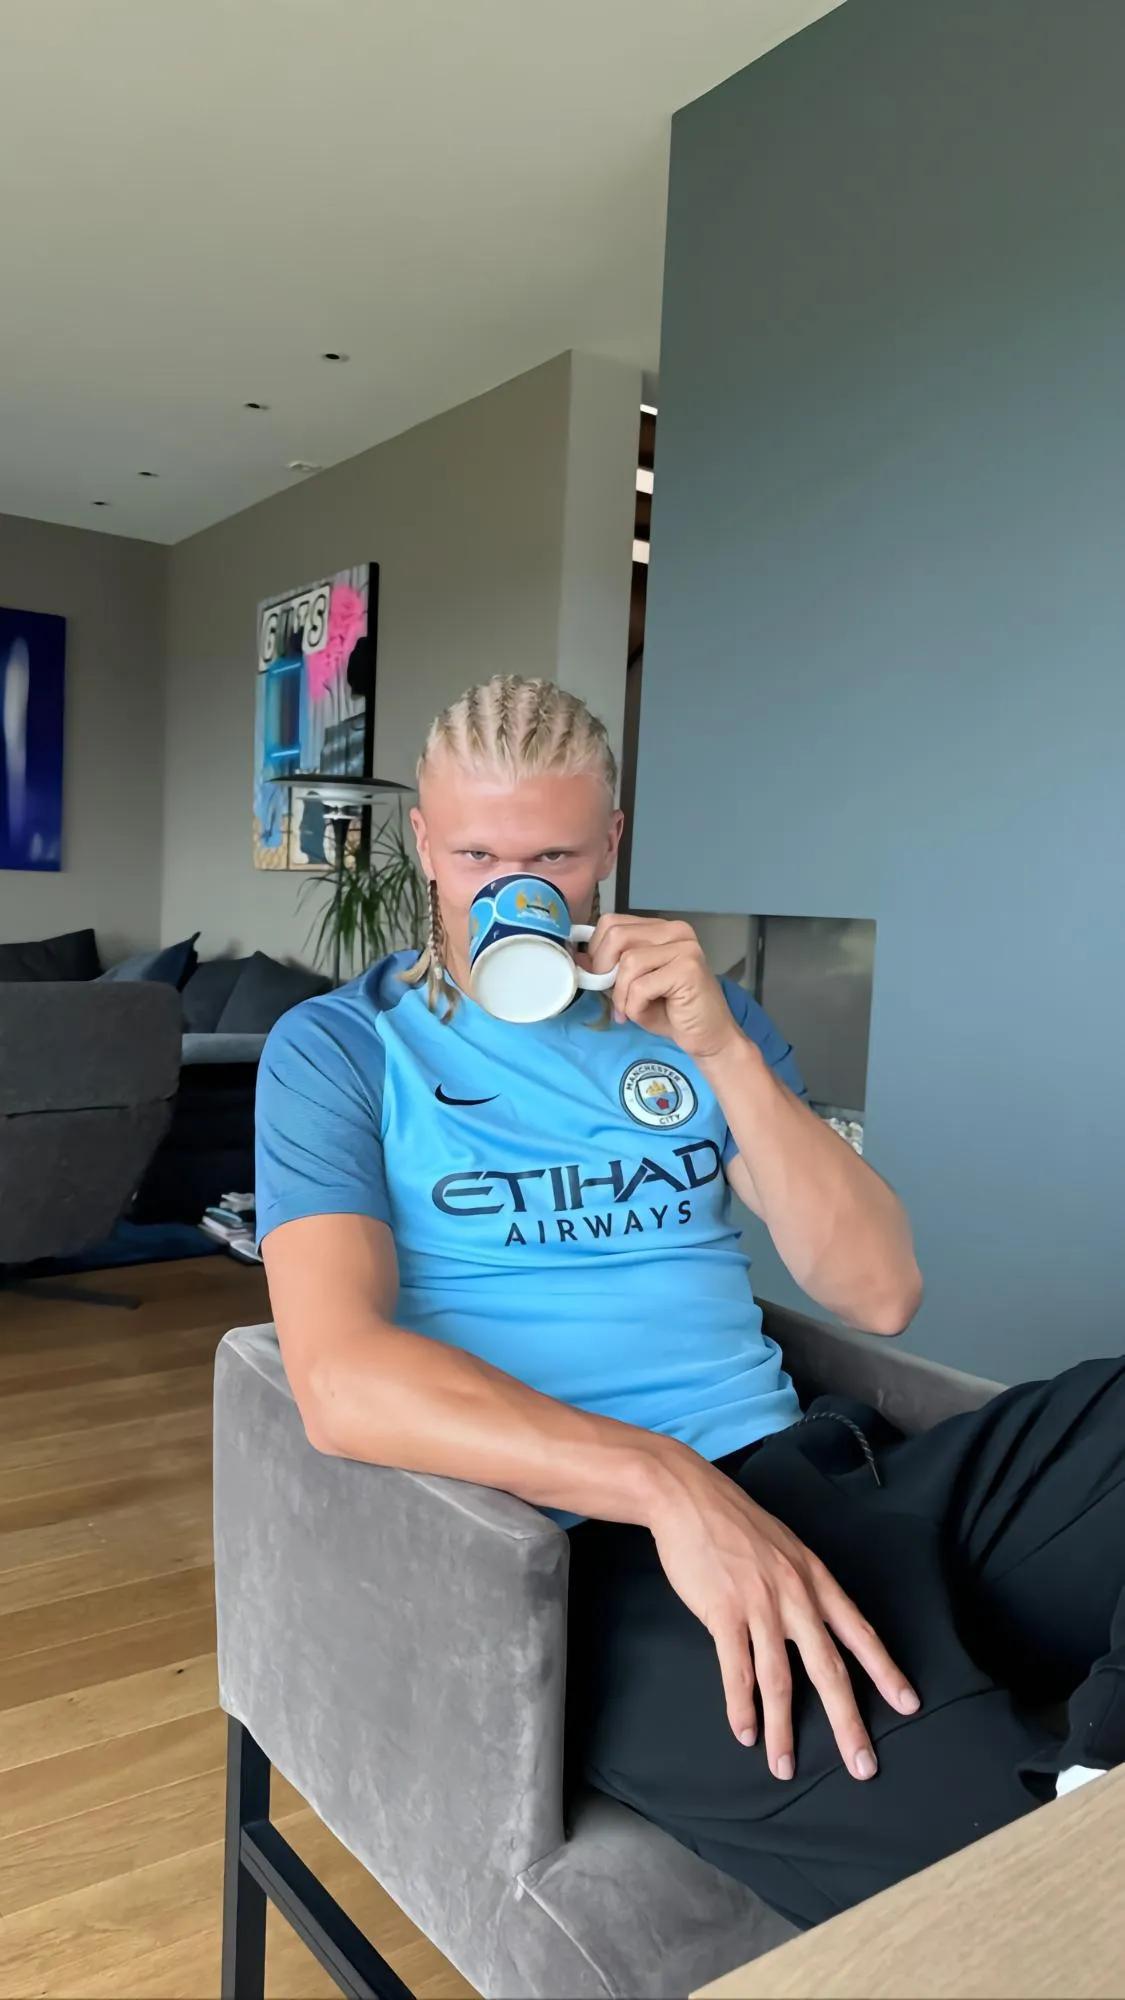 哈兰德身穿曼城球衣，用曼城马克杯喝水的照片。
球衣是曼城老球衣，被子上是曼城的老